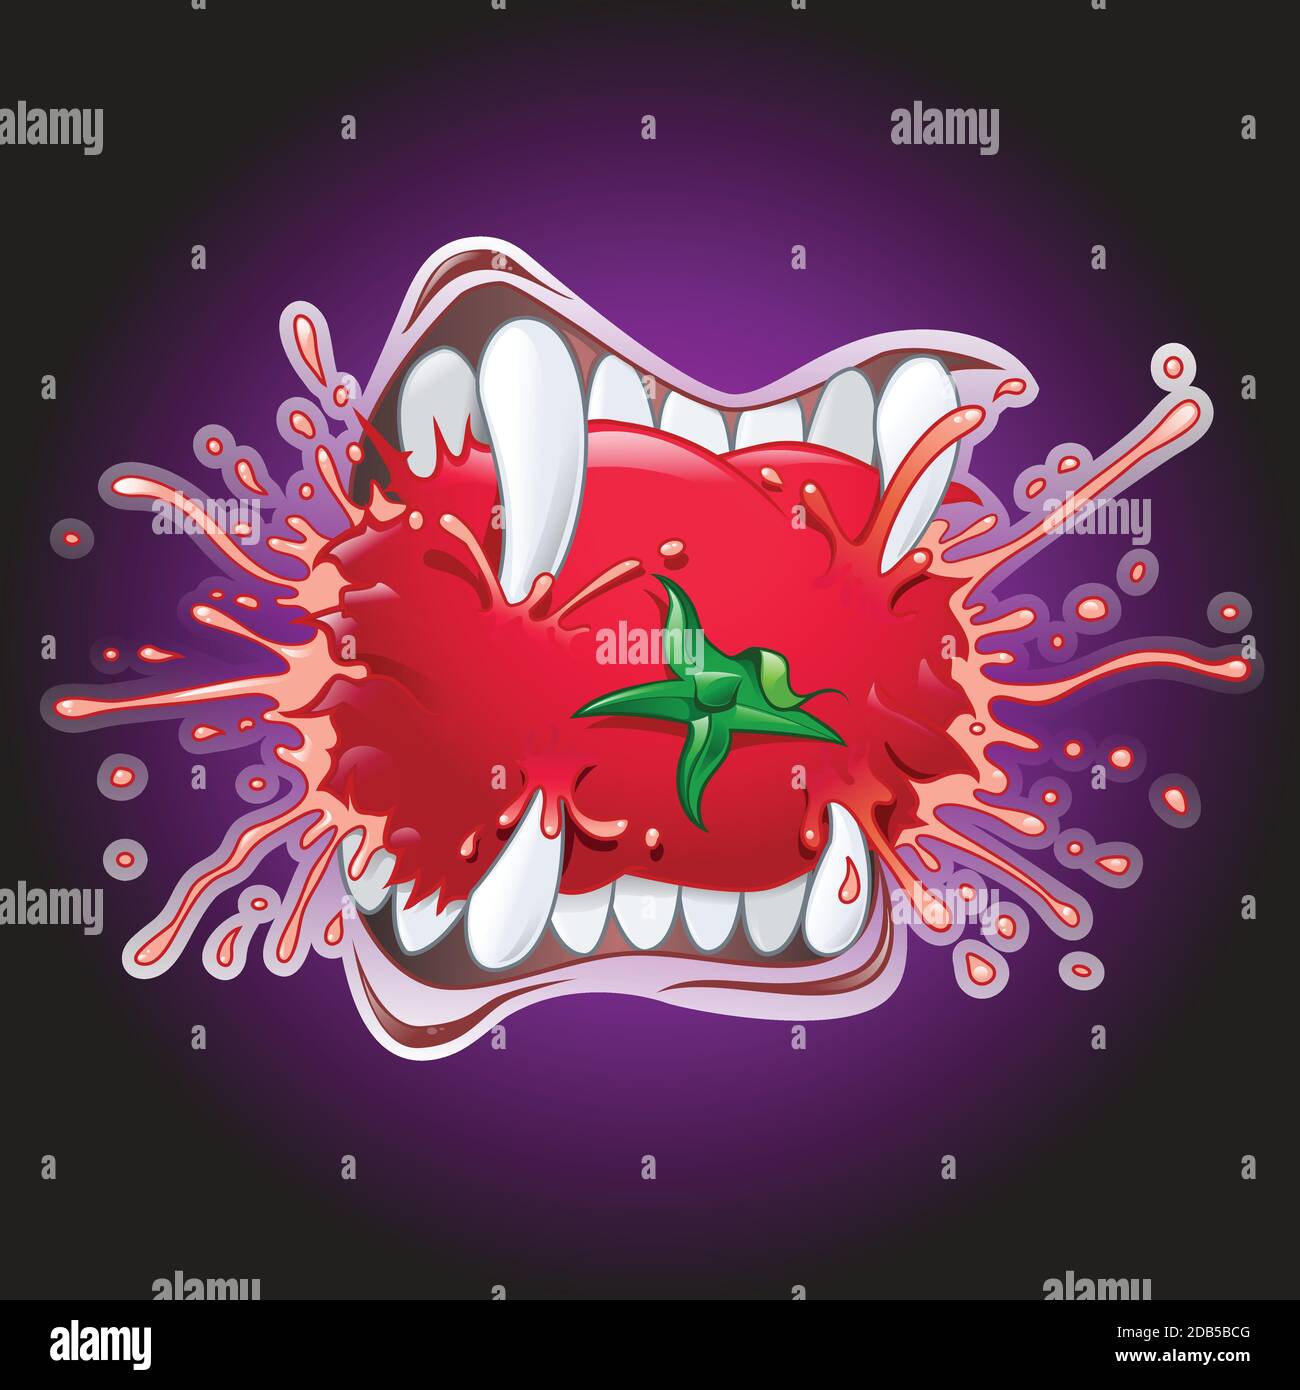 Illustration de la bande dessinée des dents de vampire mordant une tomate juteuse. Arrière-plan violet foncé Illustration de Vecteur